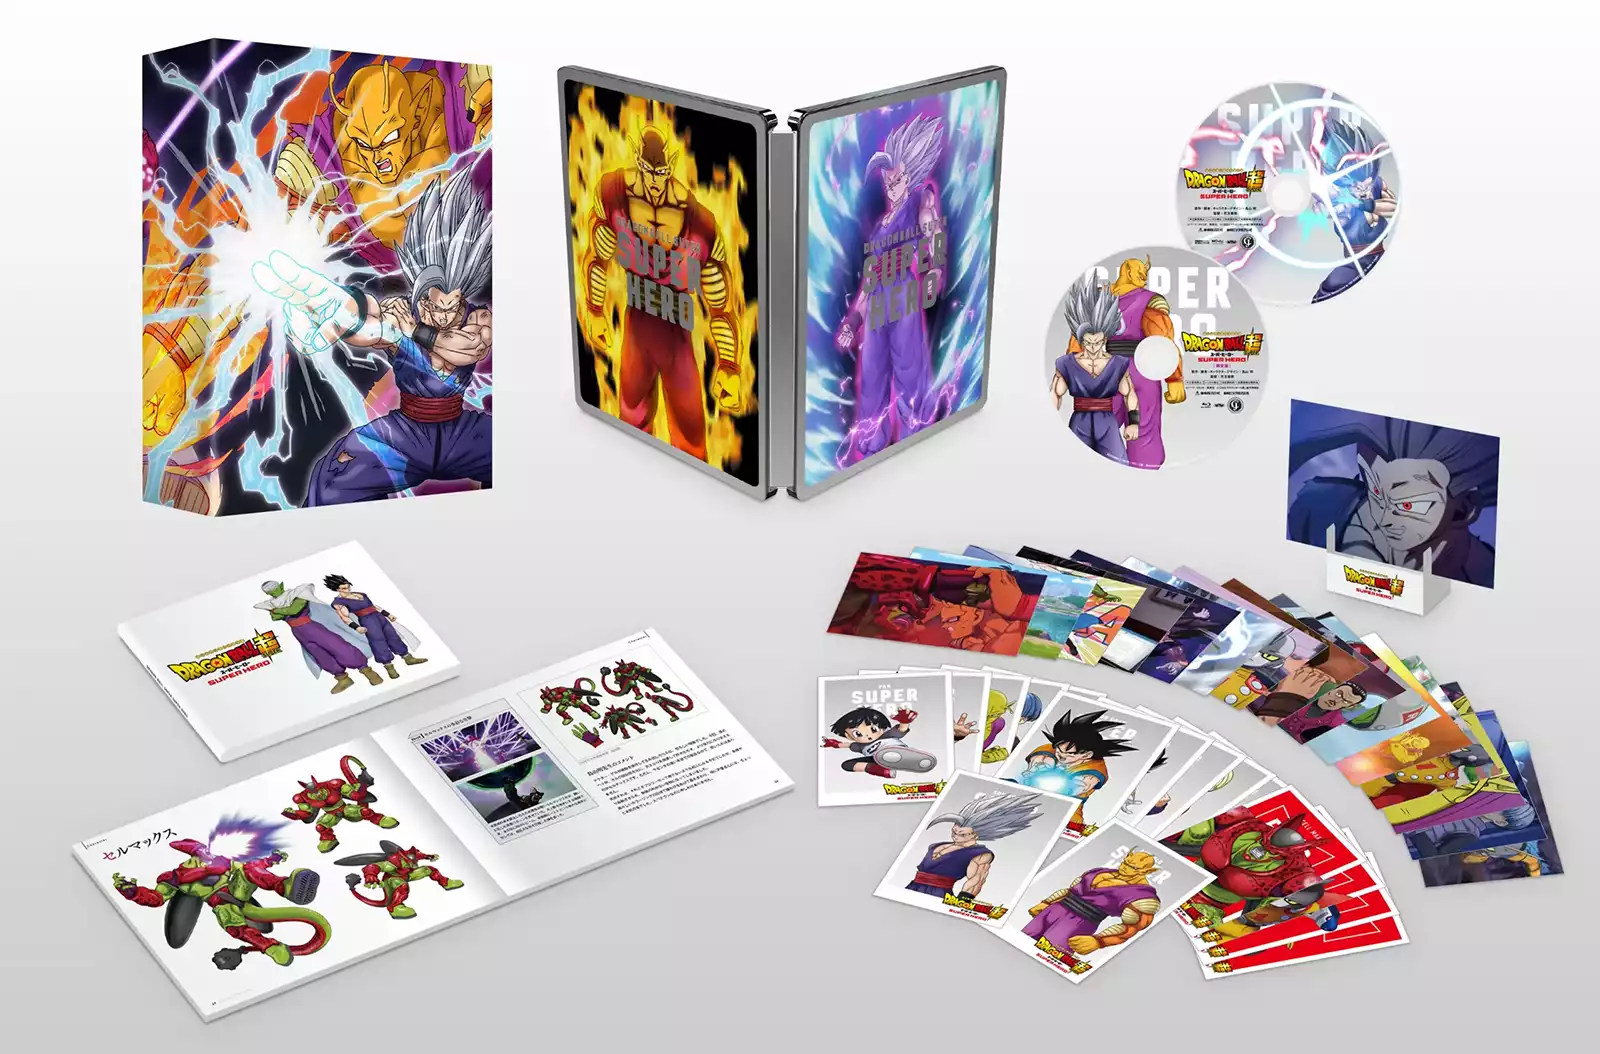 Dragon Ball Super SUPER HERO (DVD / Blu-ray) : La date de sortie en France